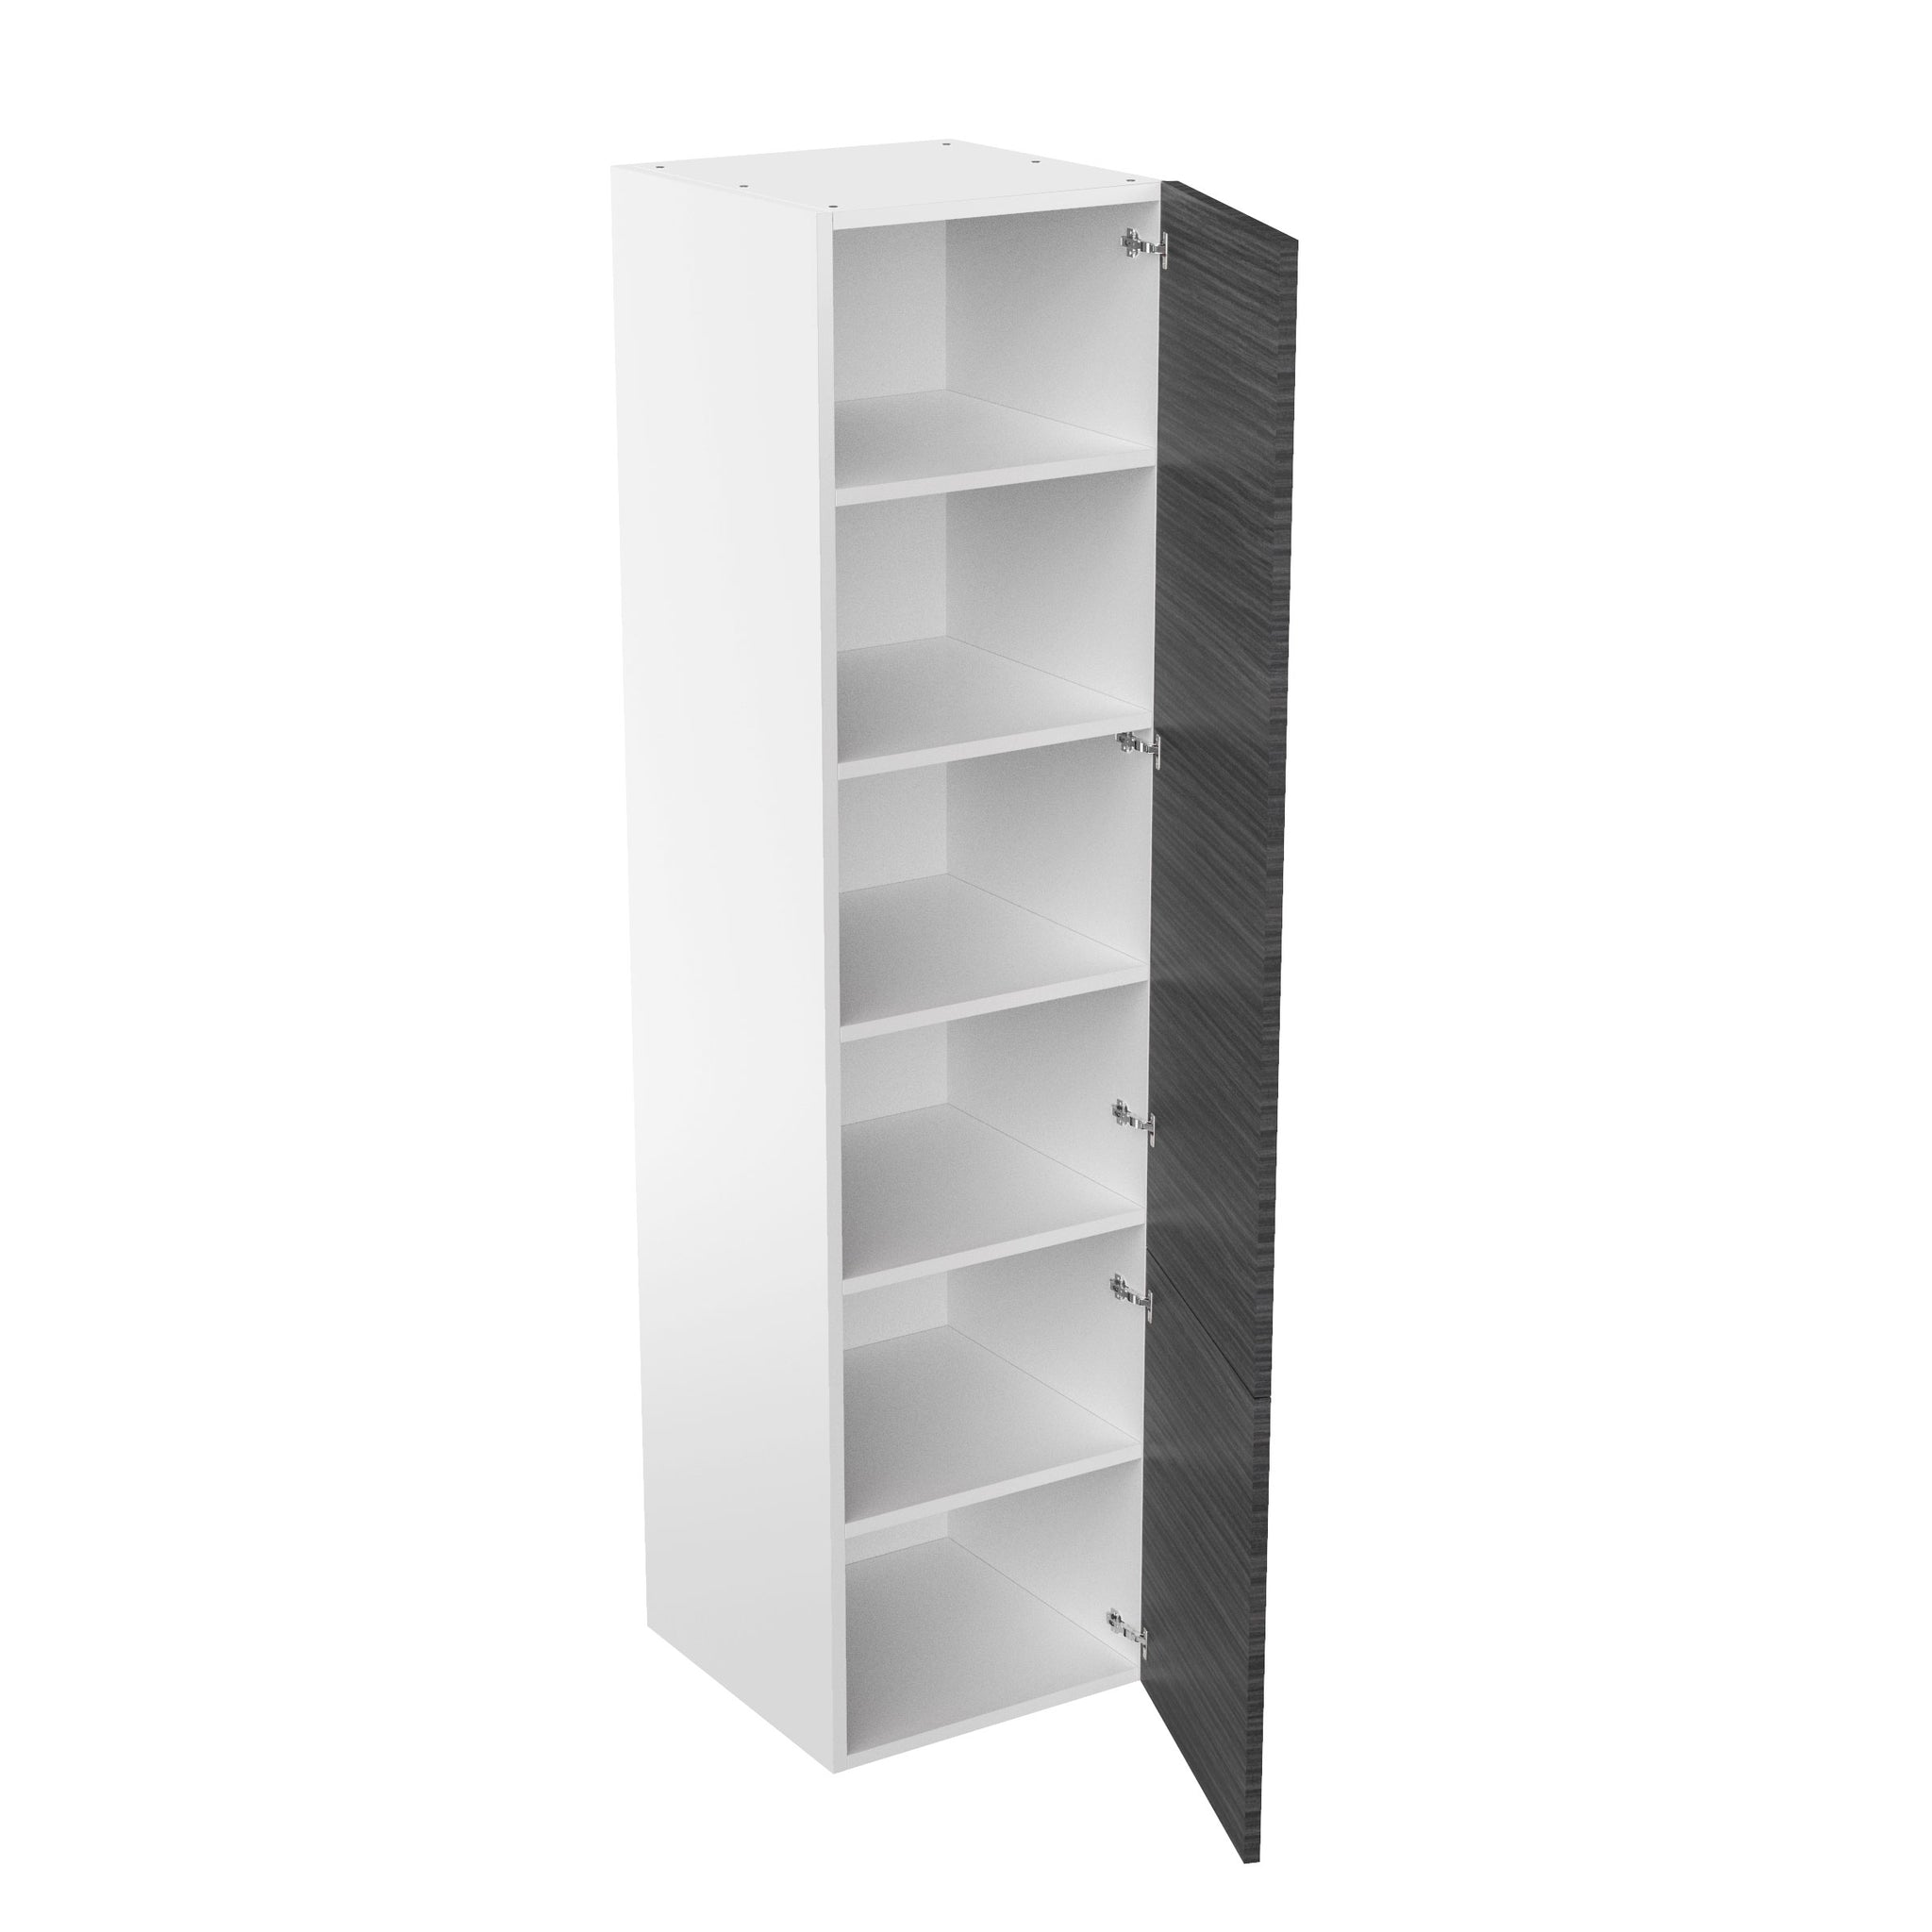 RTA - Dark Wood - Single Door Tall Cabinets | 24"W x 96"H x 23.8"D